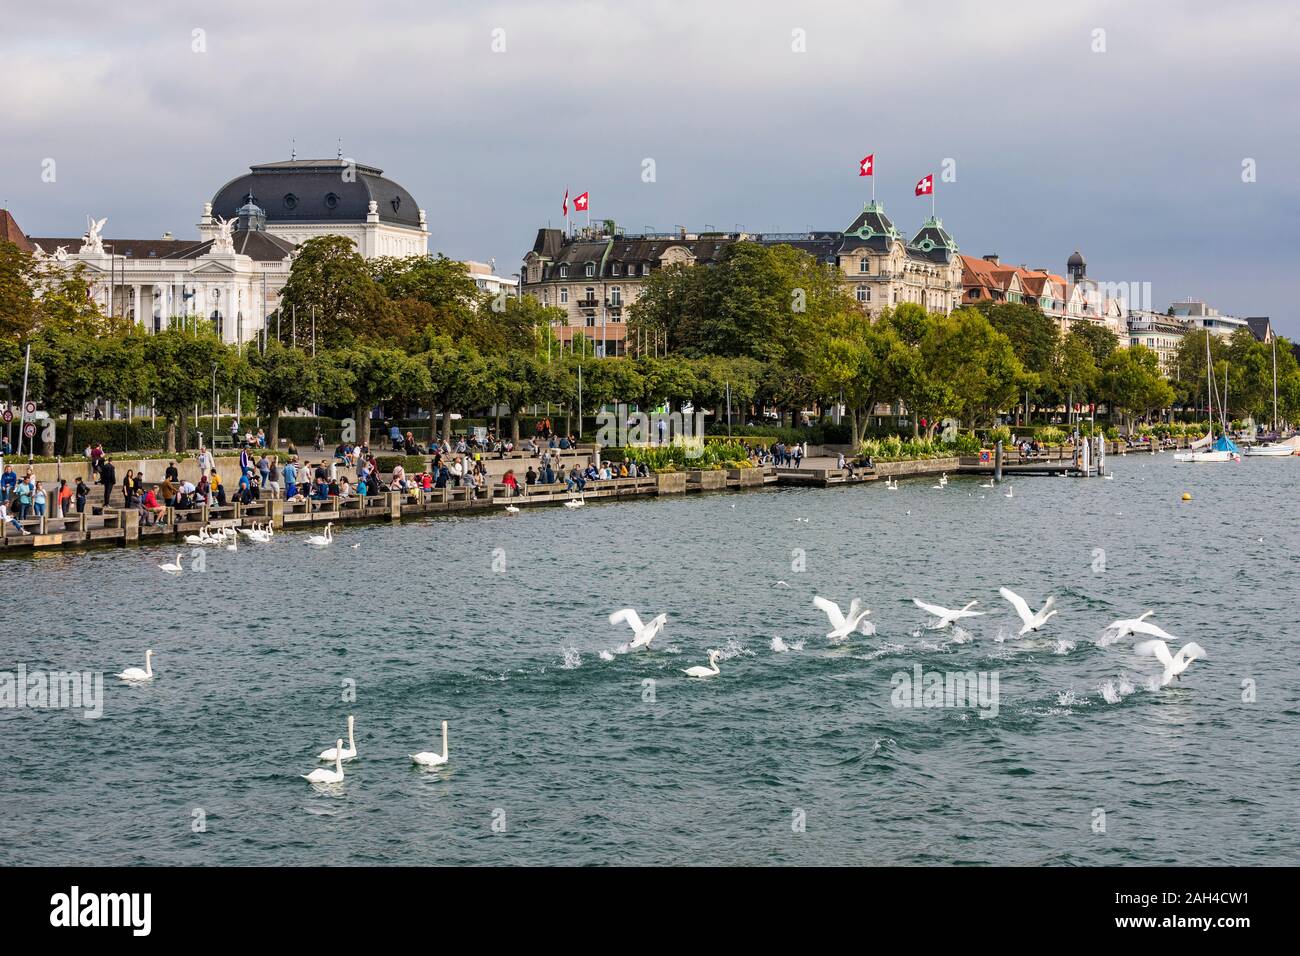 Switzerland, Canton of Zurich, Zurich, Flock of mute swans swimming in Lake Zurich Stock Photo